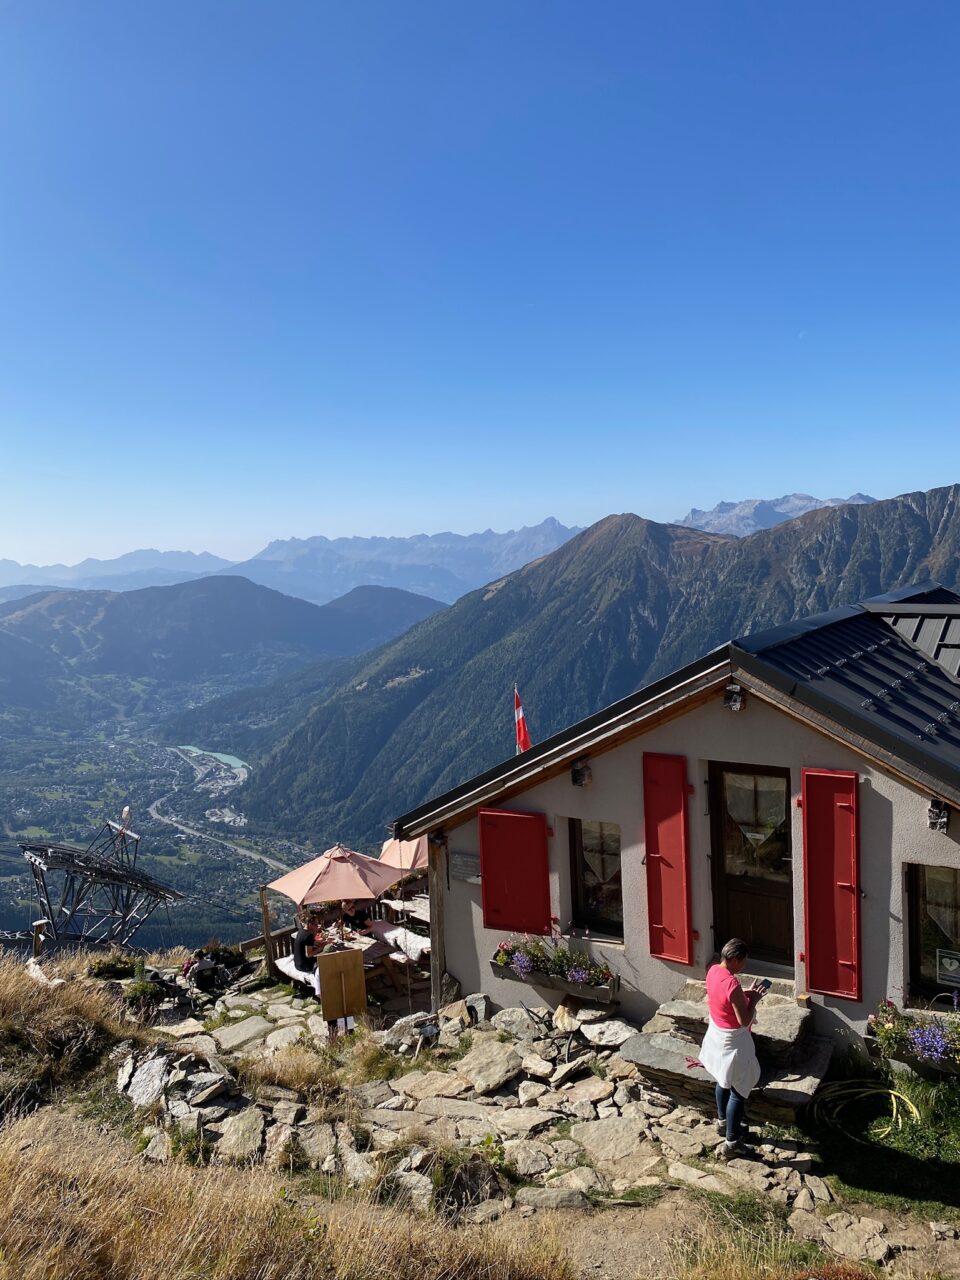 Hyggelig fjellstue med vakker utsikt over kupert landskap. Foto